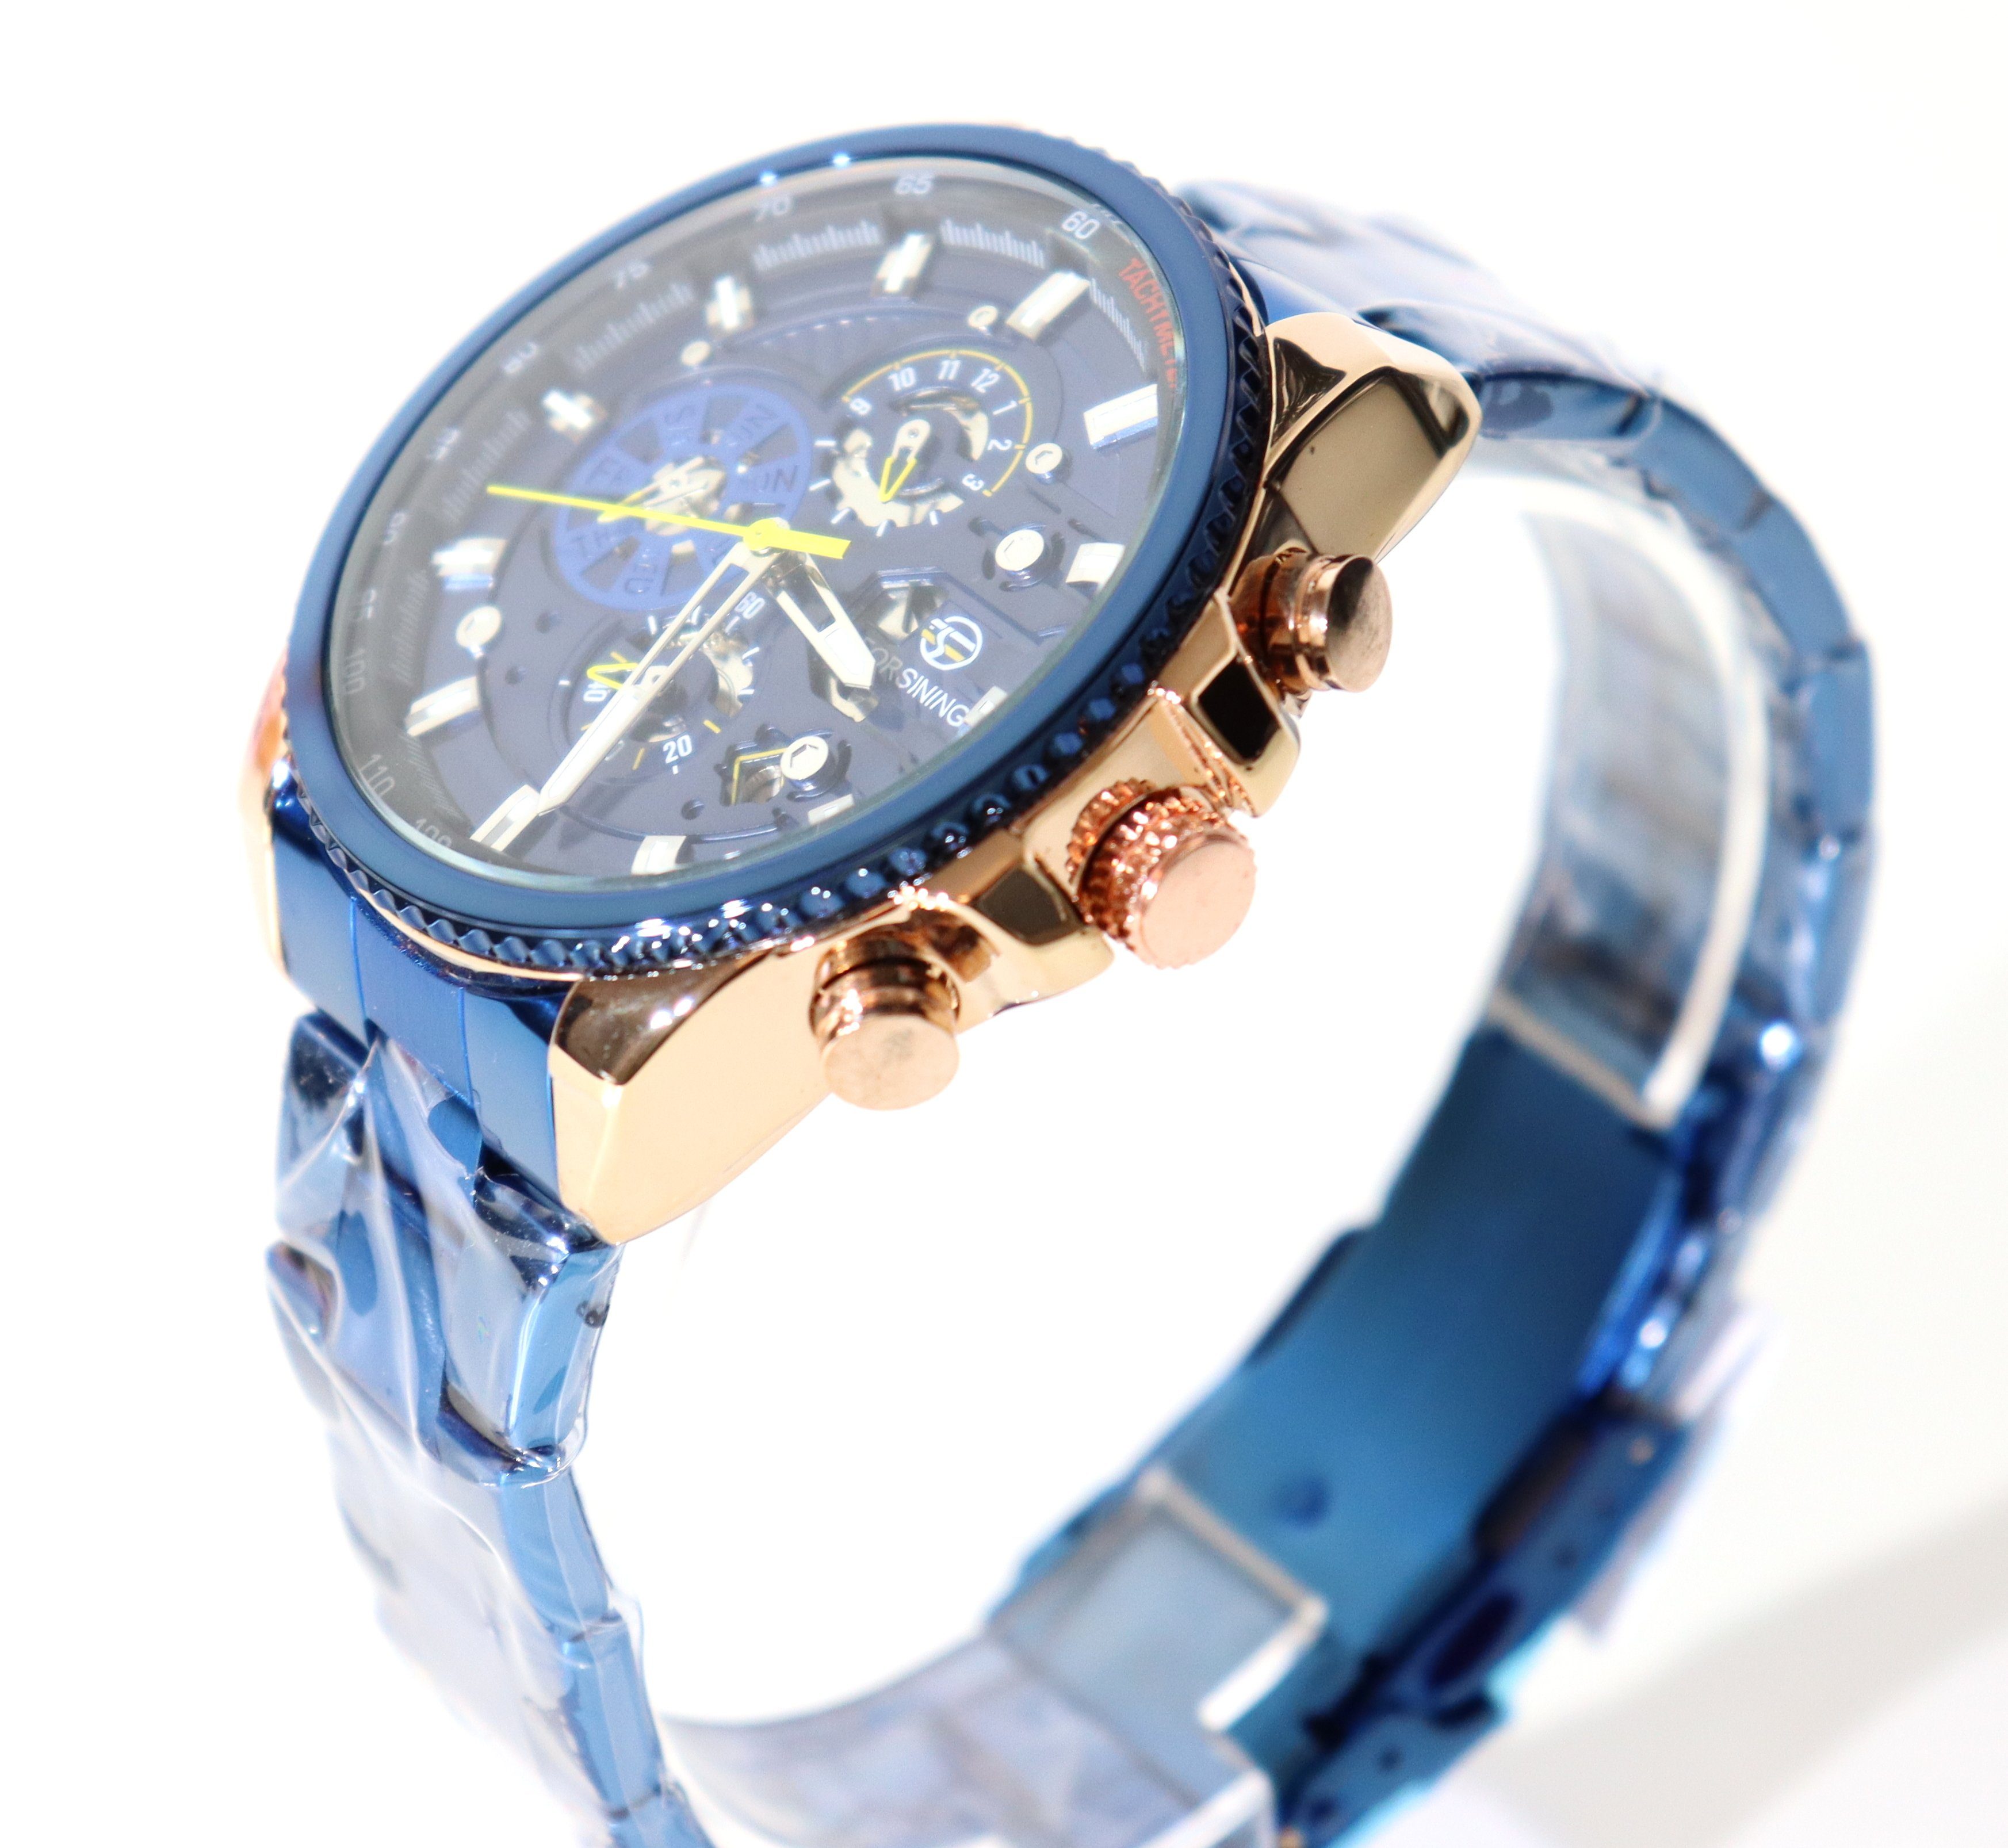 Marke Forsining Wochentag blaues Herrenuhr Monats Datum Automatikuhr und Ziffernblatt Automatikuhr Anzeige Armband Rötting Design